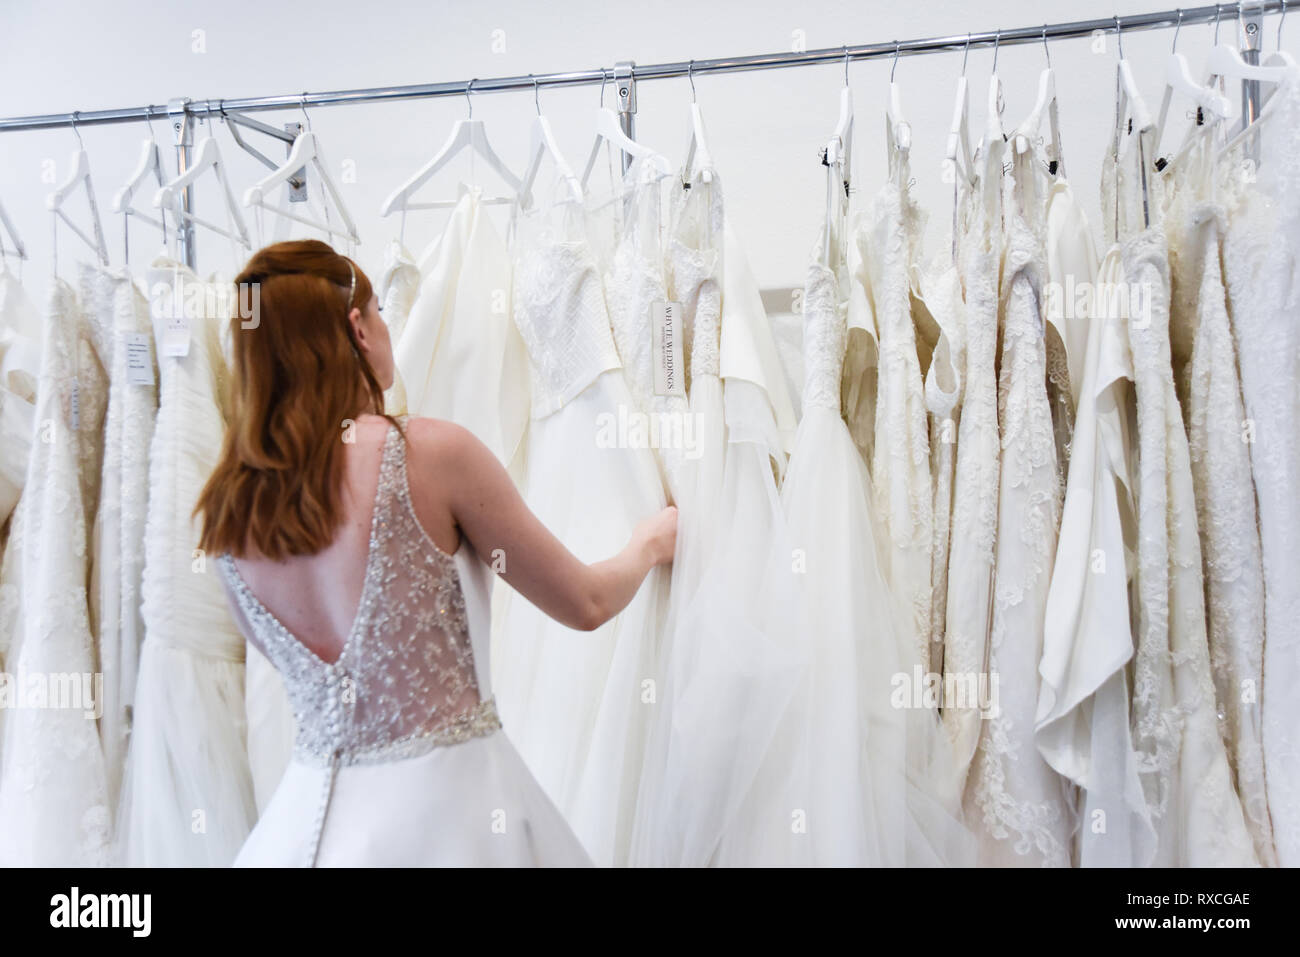 Eine hübsche rothaarige Mädchen ist Hochzeit Kleid einkaufen, indem sie sich in einen schönen Shop - sie versucht auf Kleider und Schuhe Stockfoto